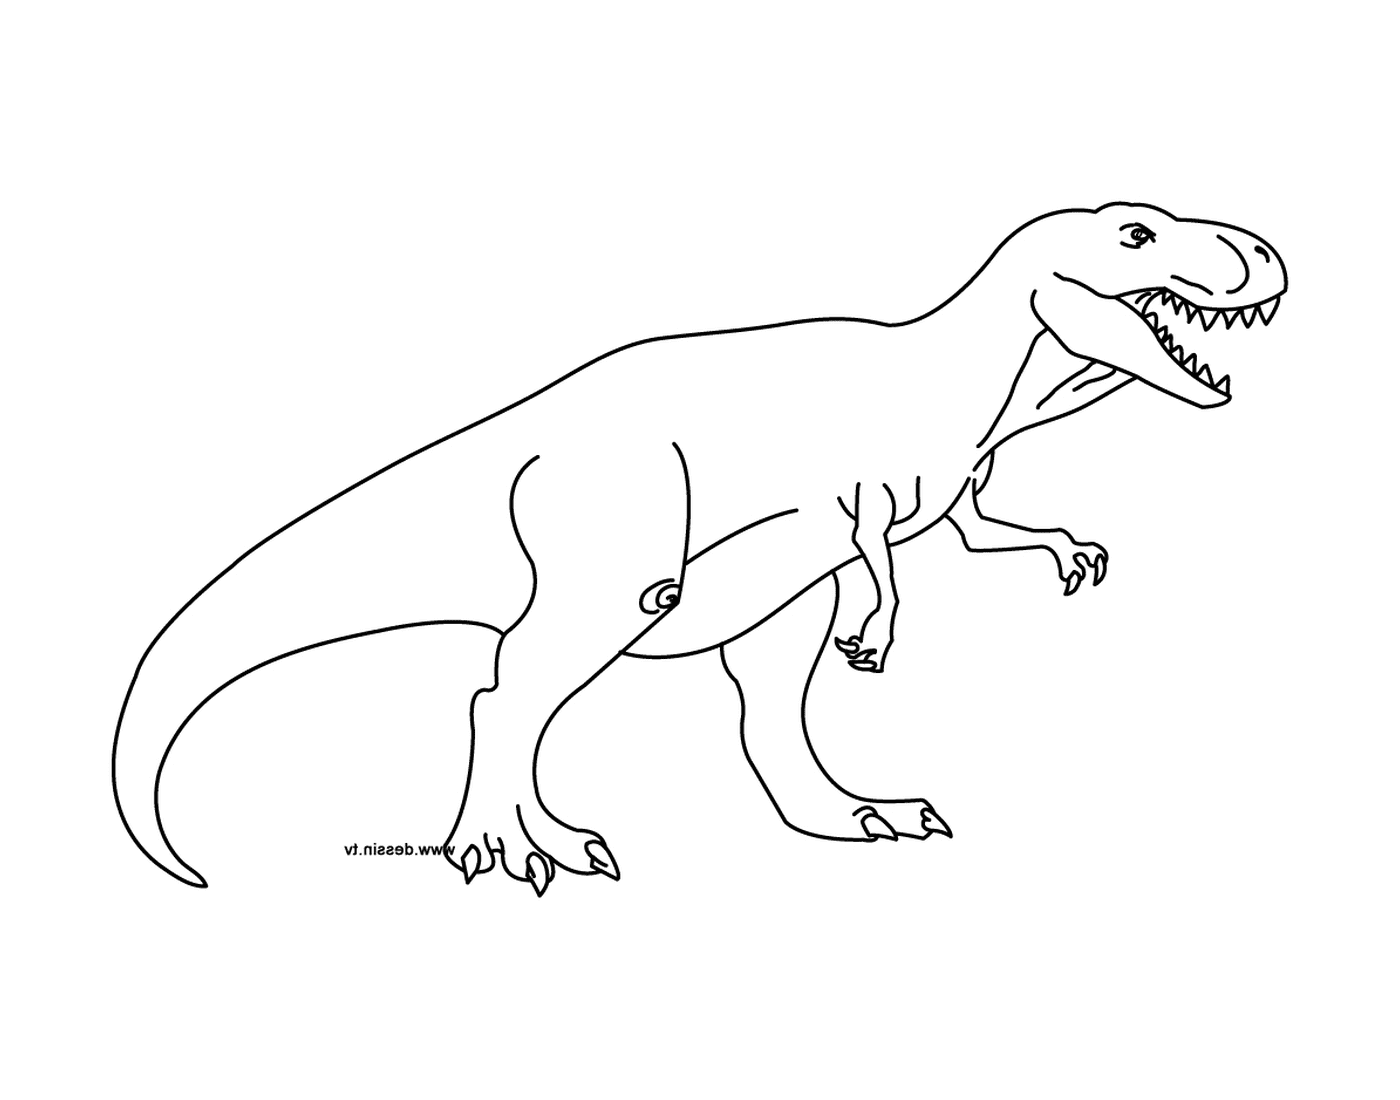  A tyrannosaur 